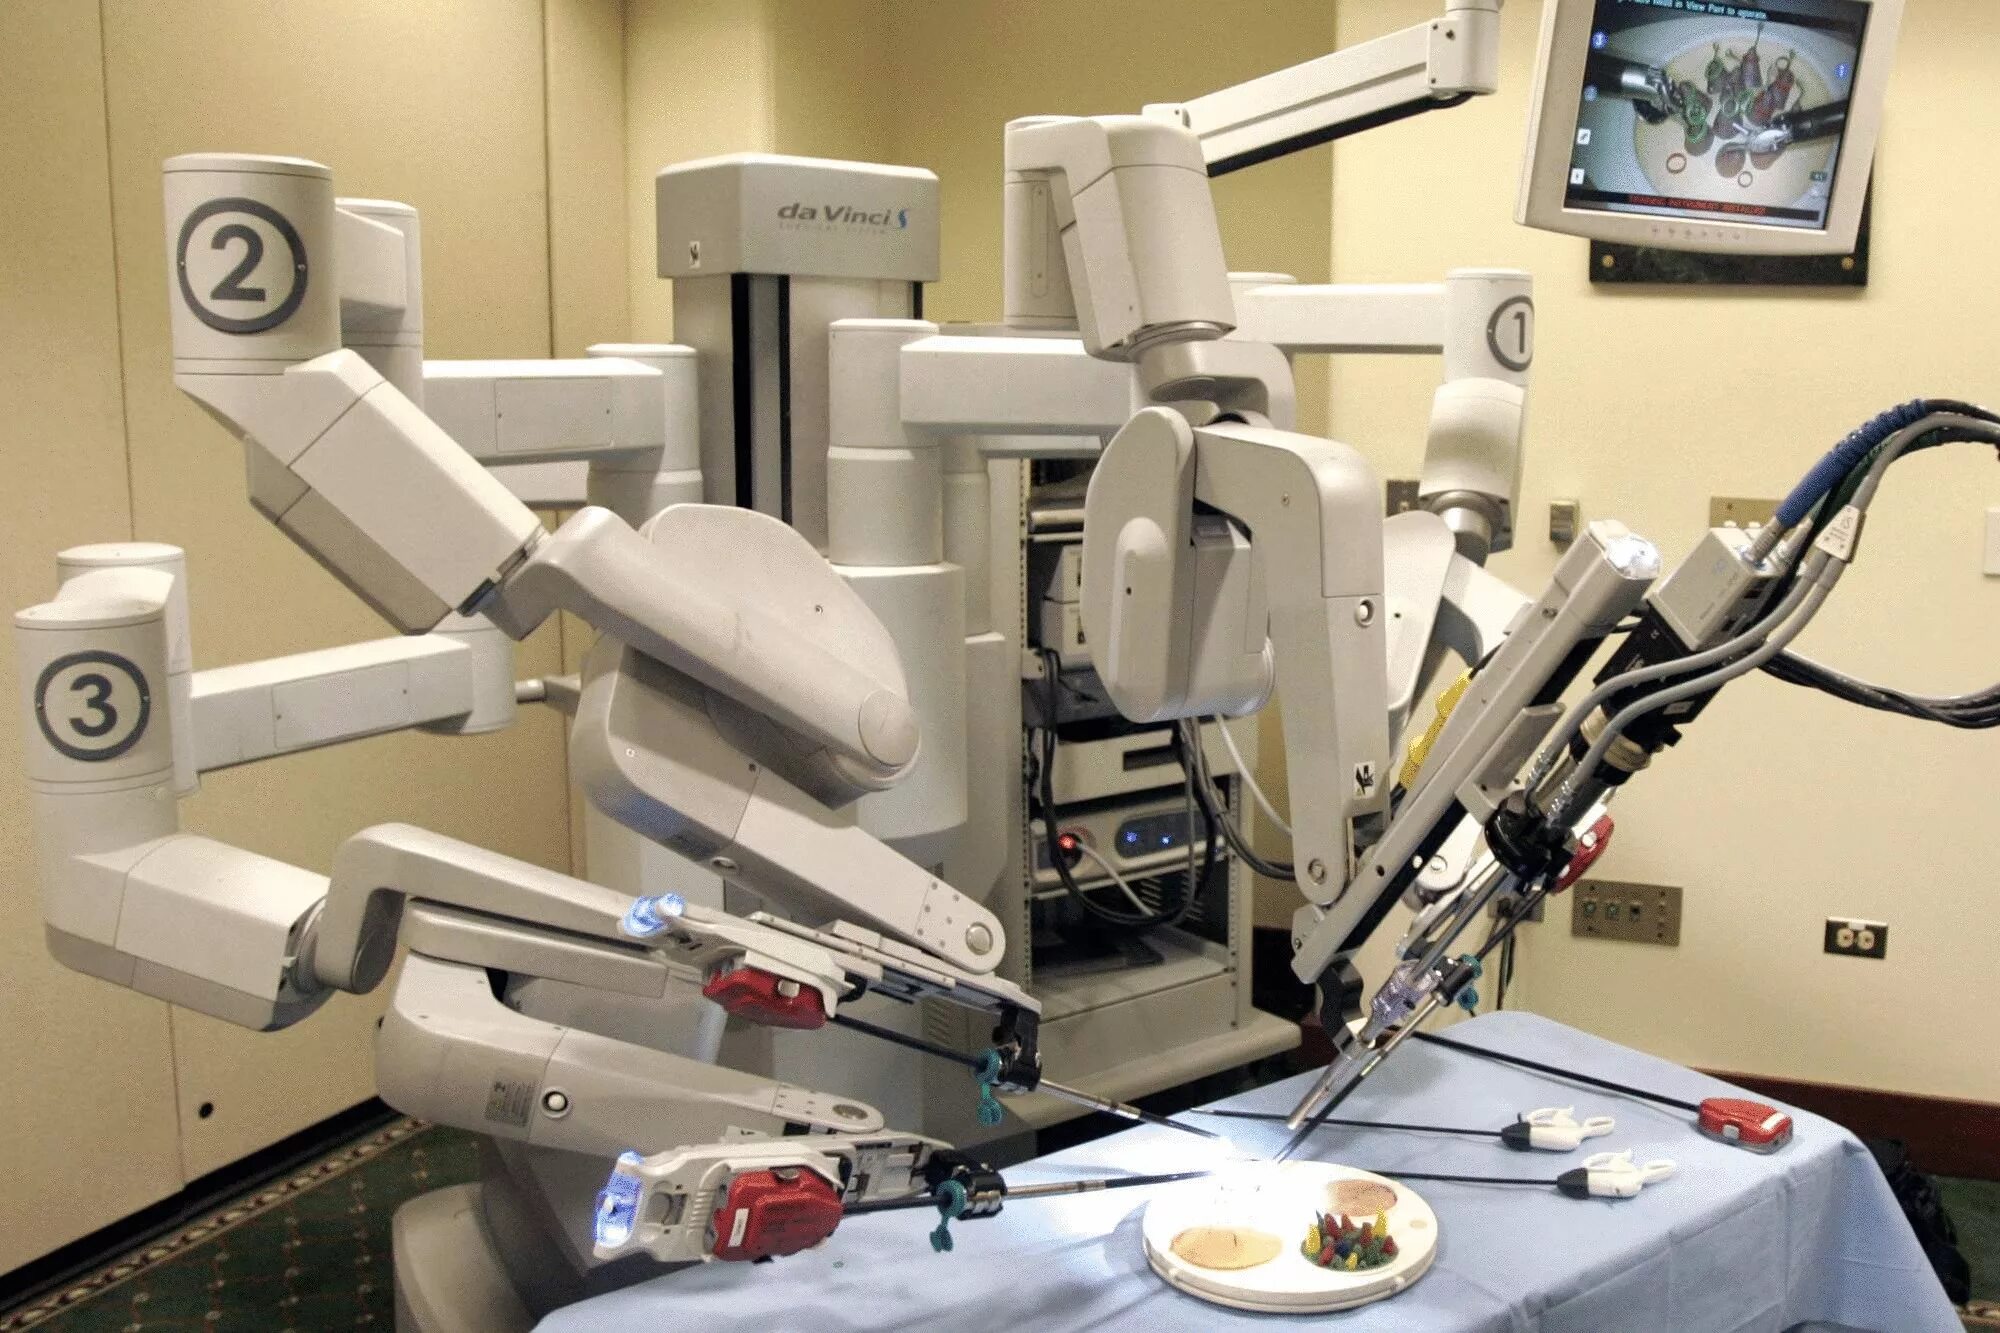 Робот-хирург da Vinci (да Винчи). Da Vinci операционный робот. Робот робот-хирург DAVINCI. Робот-ассистированная хирургическая система «da Vinci». Робот провел операцию